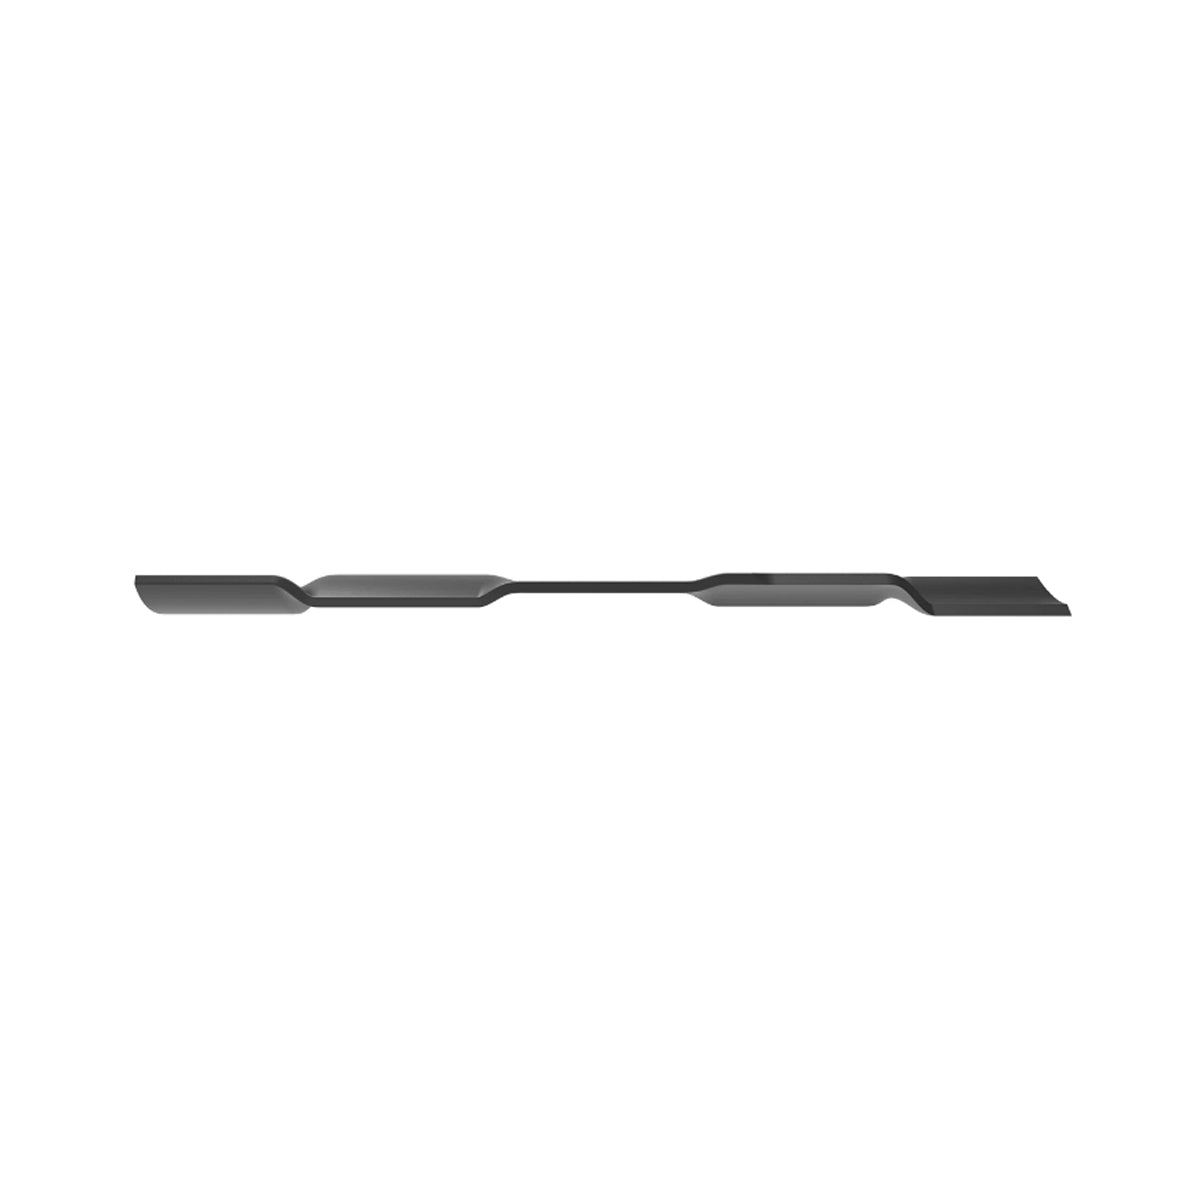 John Deere Mower Blade (Mulch) for GT, GX, LX, Select & EZTrak Series with 54" Deck - M145516